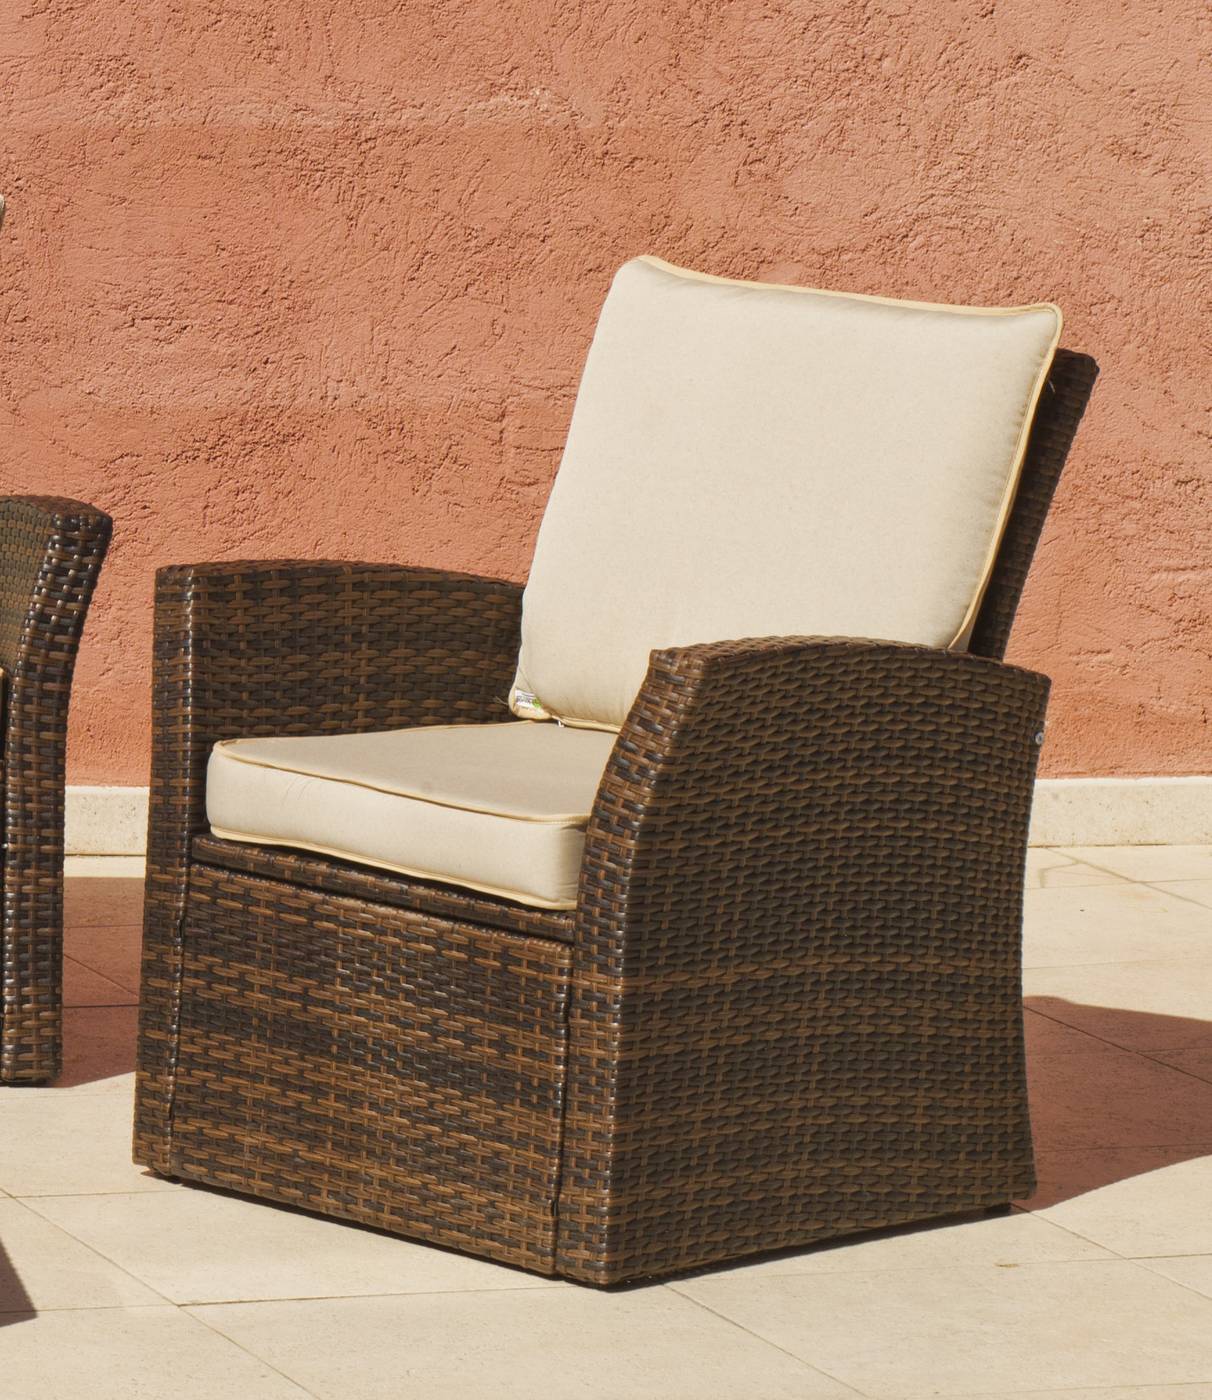 Conjunto Ratán Sint. Alpes-8 - Conjunto desmontable de ratán sintético color marrón: sofá 3 plazas + 2 sillones + mesa de centro